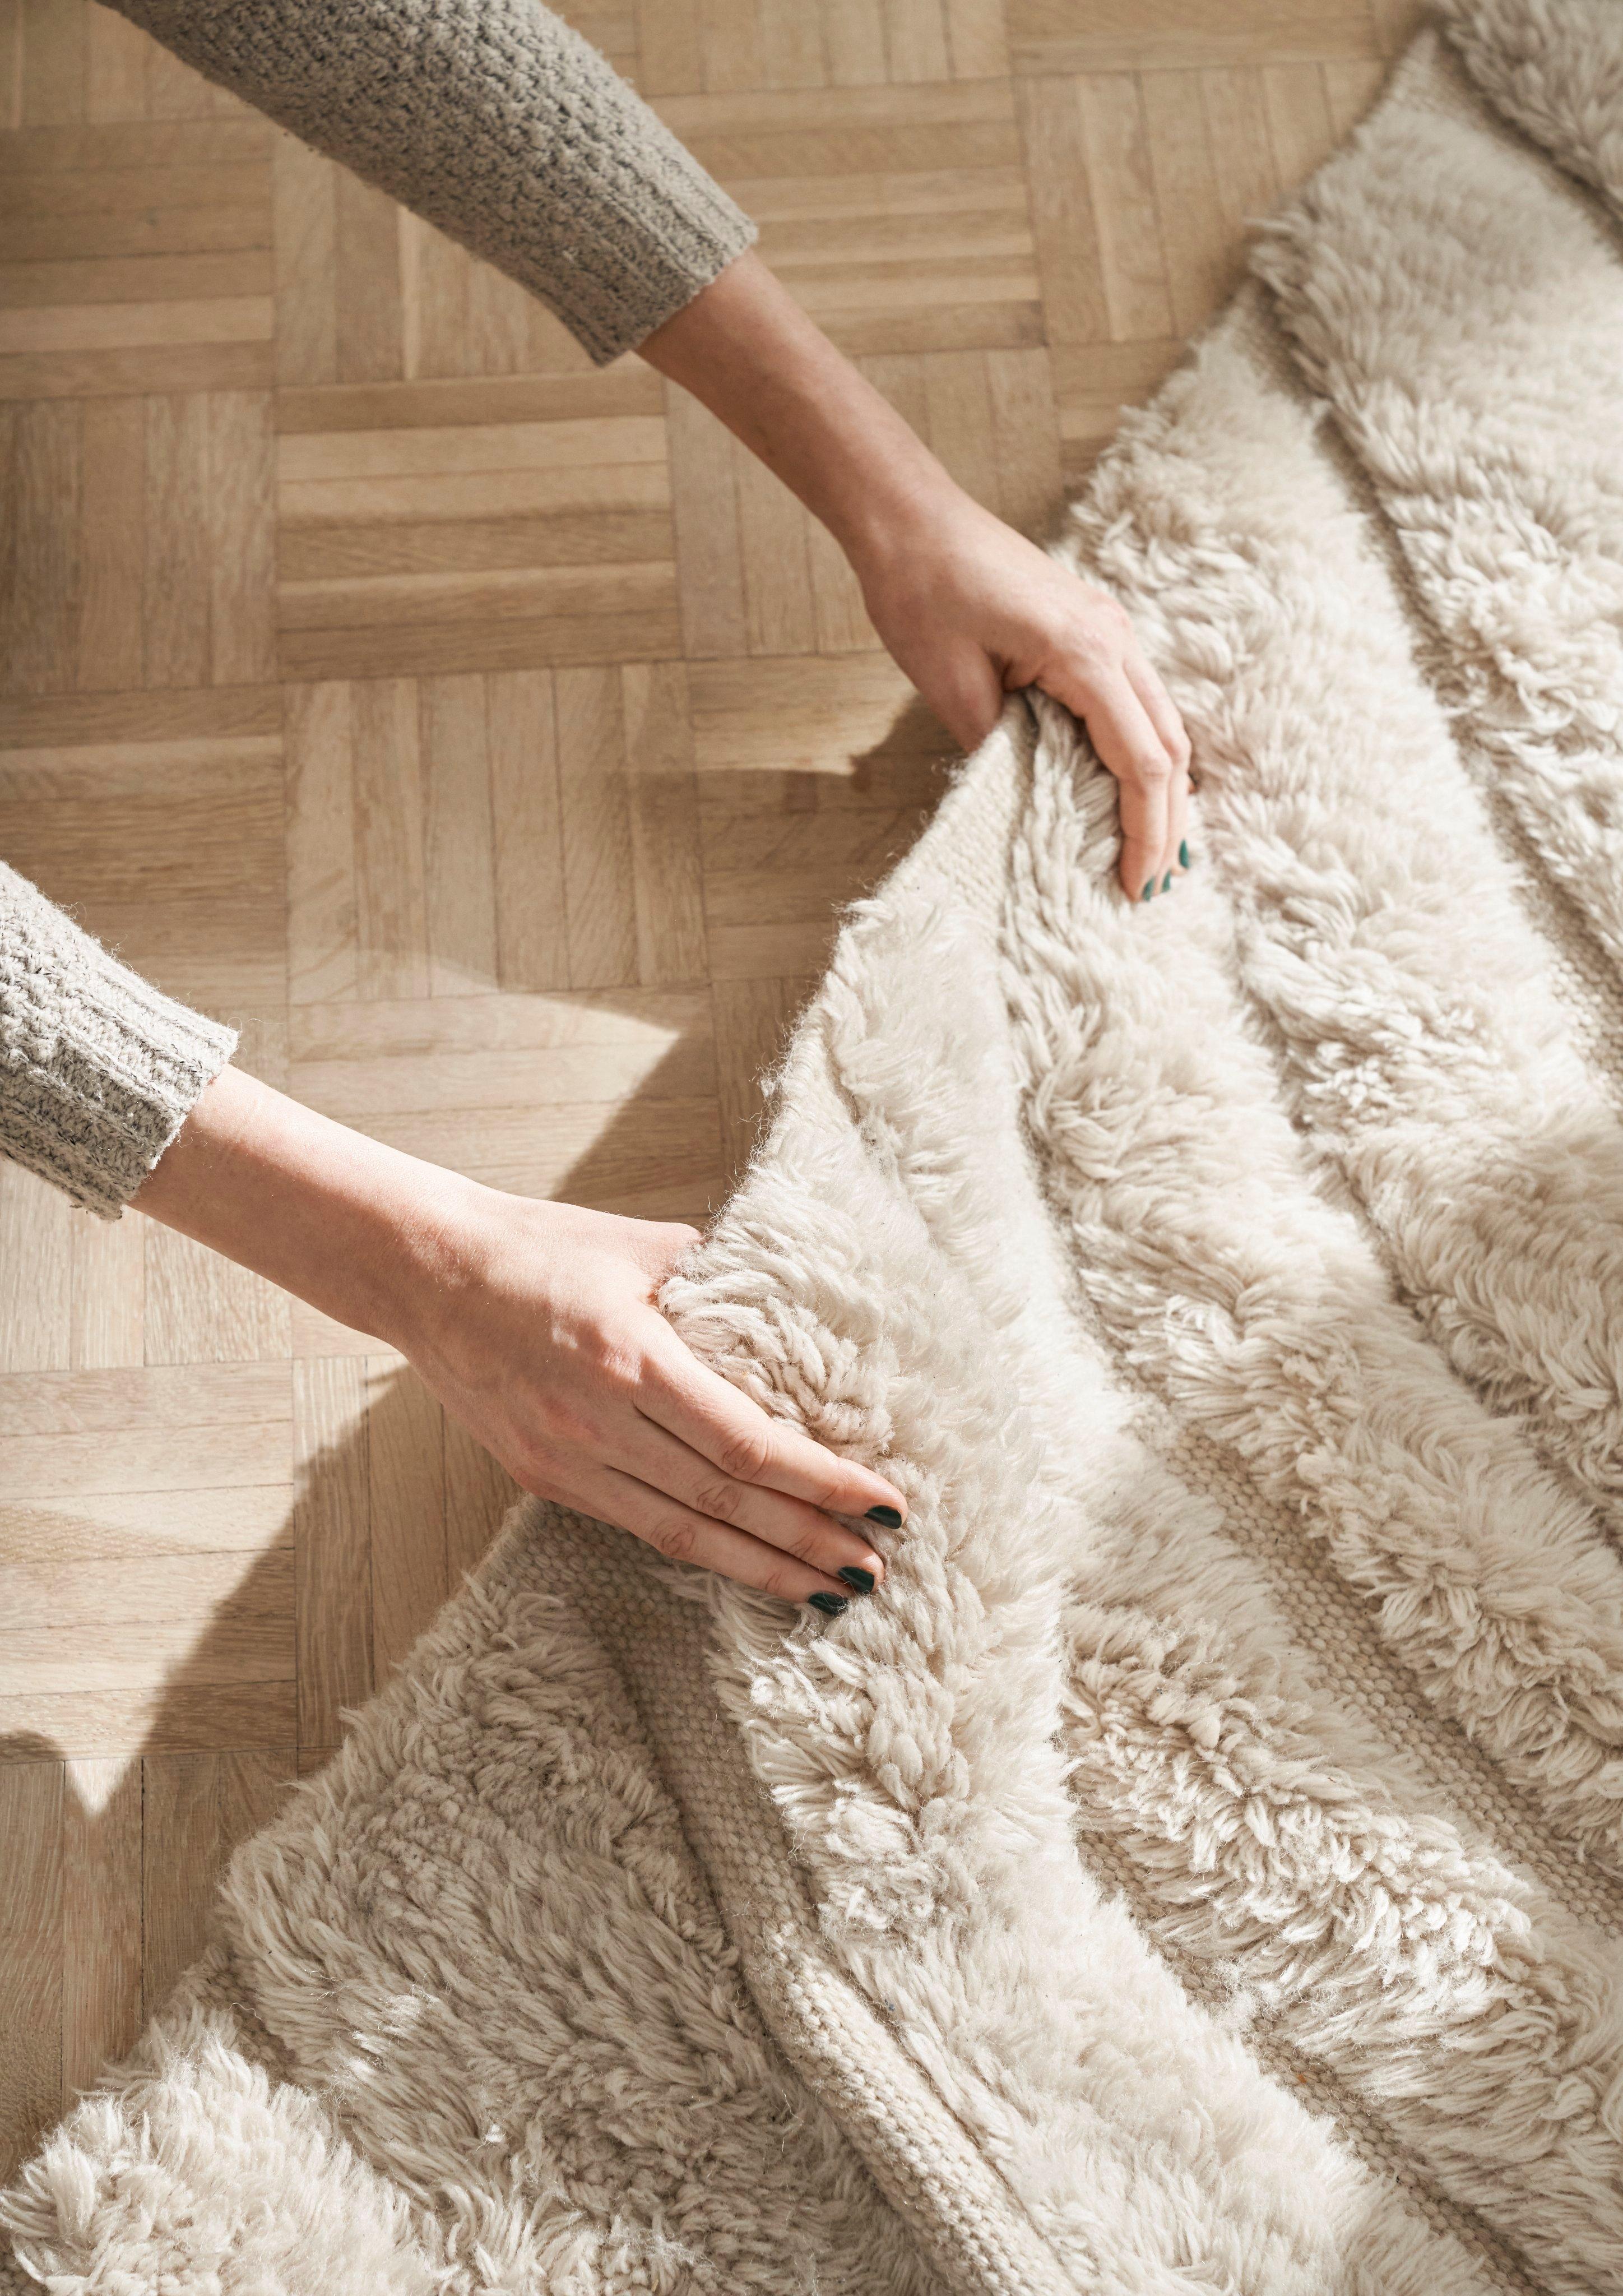 Persons hænder rører ved teksturen på Form tæppe.